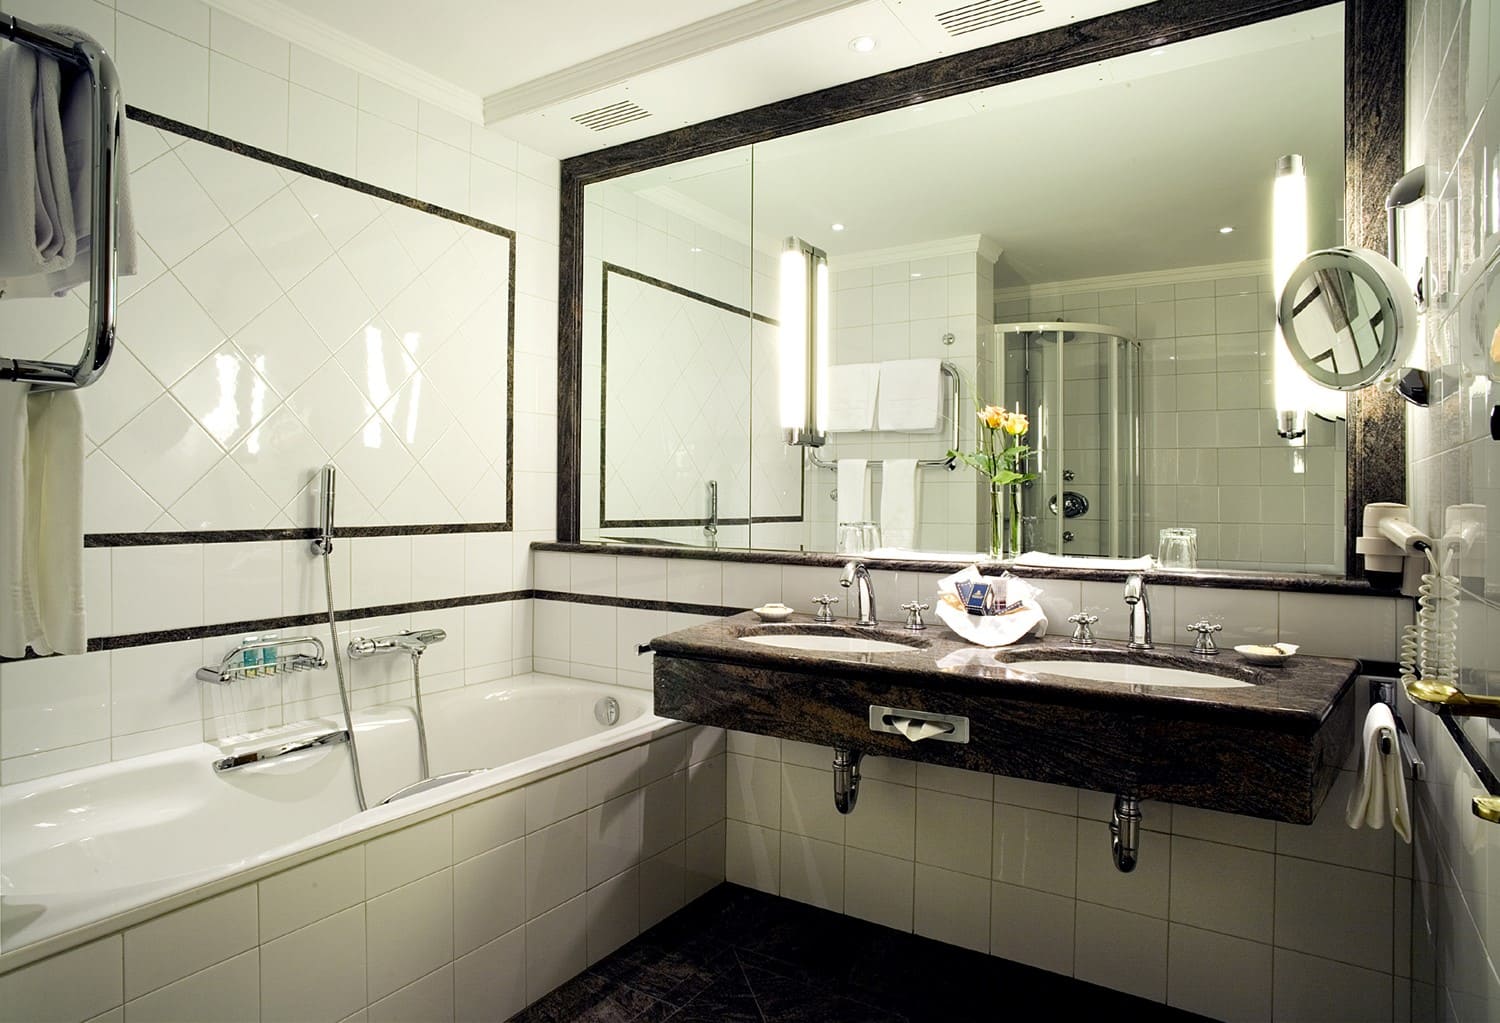 Як повісити дзеркало у ванній на плитку: способи кріпити дзеркало на плитку у ванній кімнаті